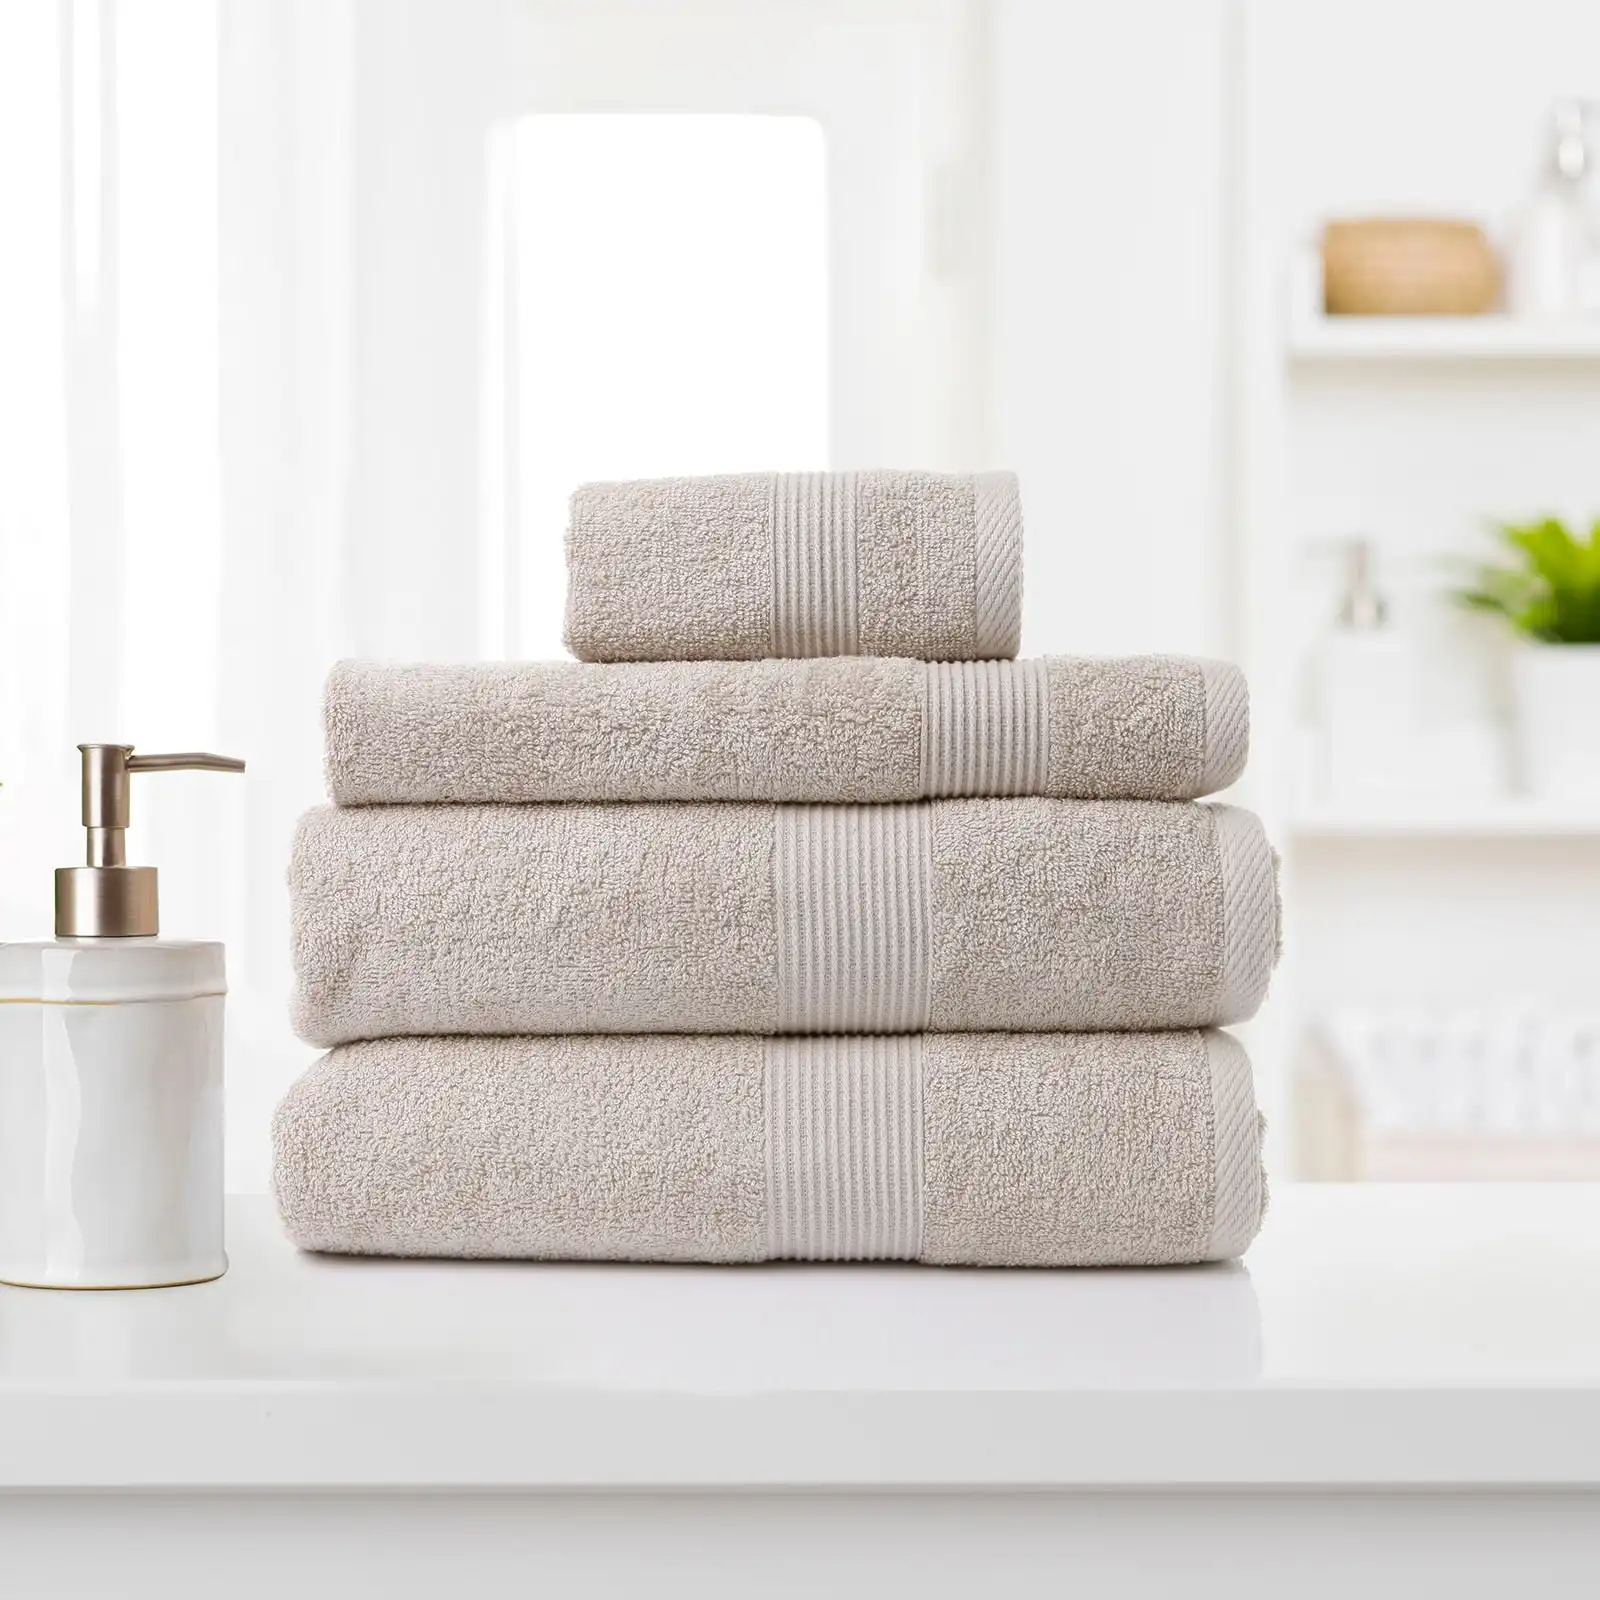 Royal Comfort 4 Piece Cotton Bamboo Towel Set 450GSM Luxurious Absorbent Plush